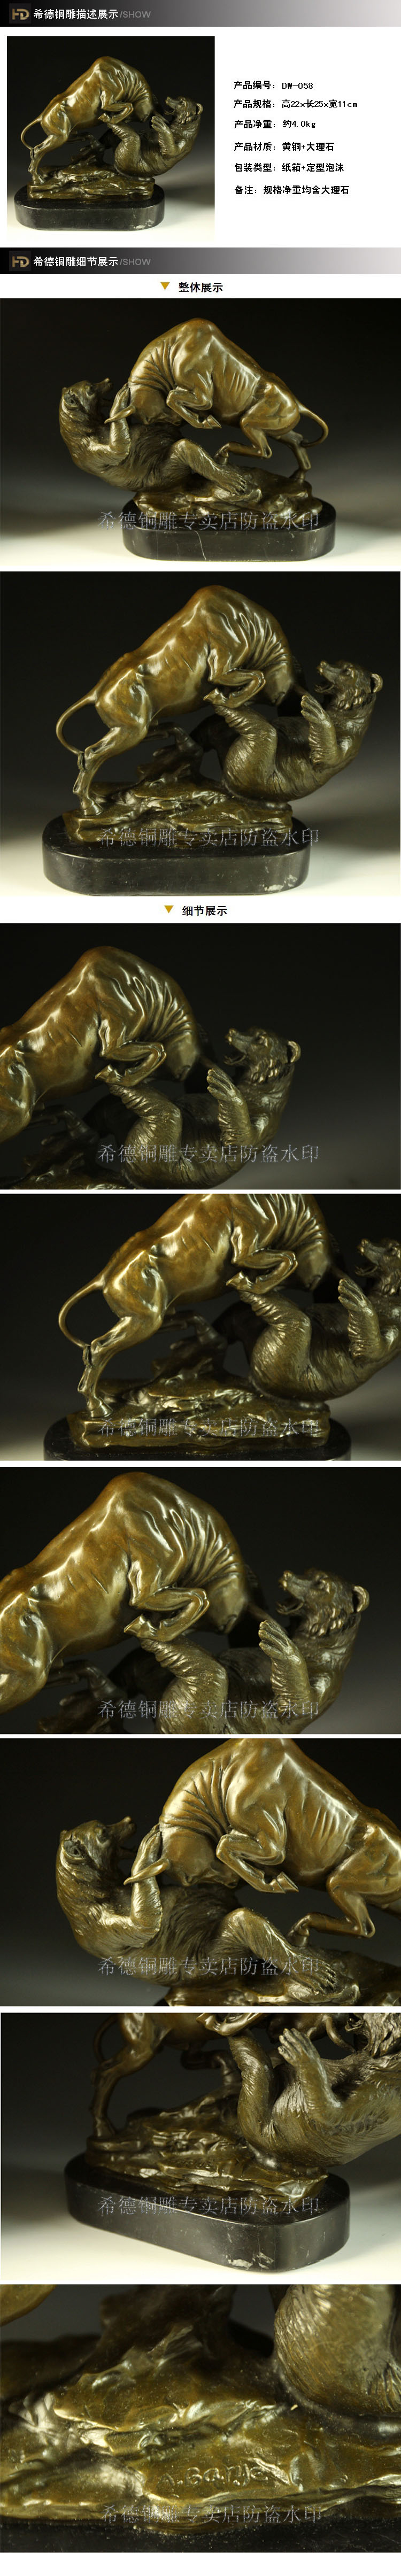 Copper copper sculpture crafts decoration animal sculpture dw-058